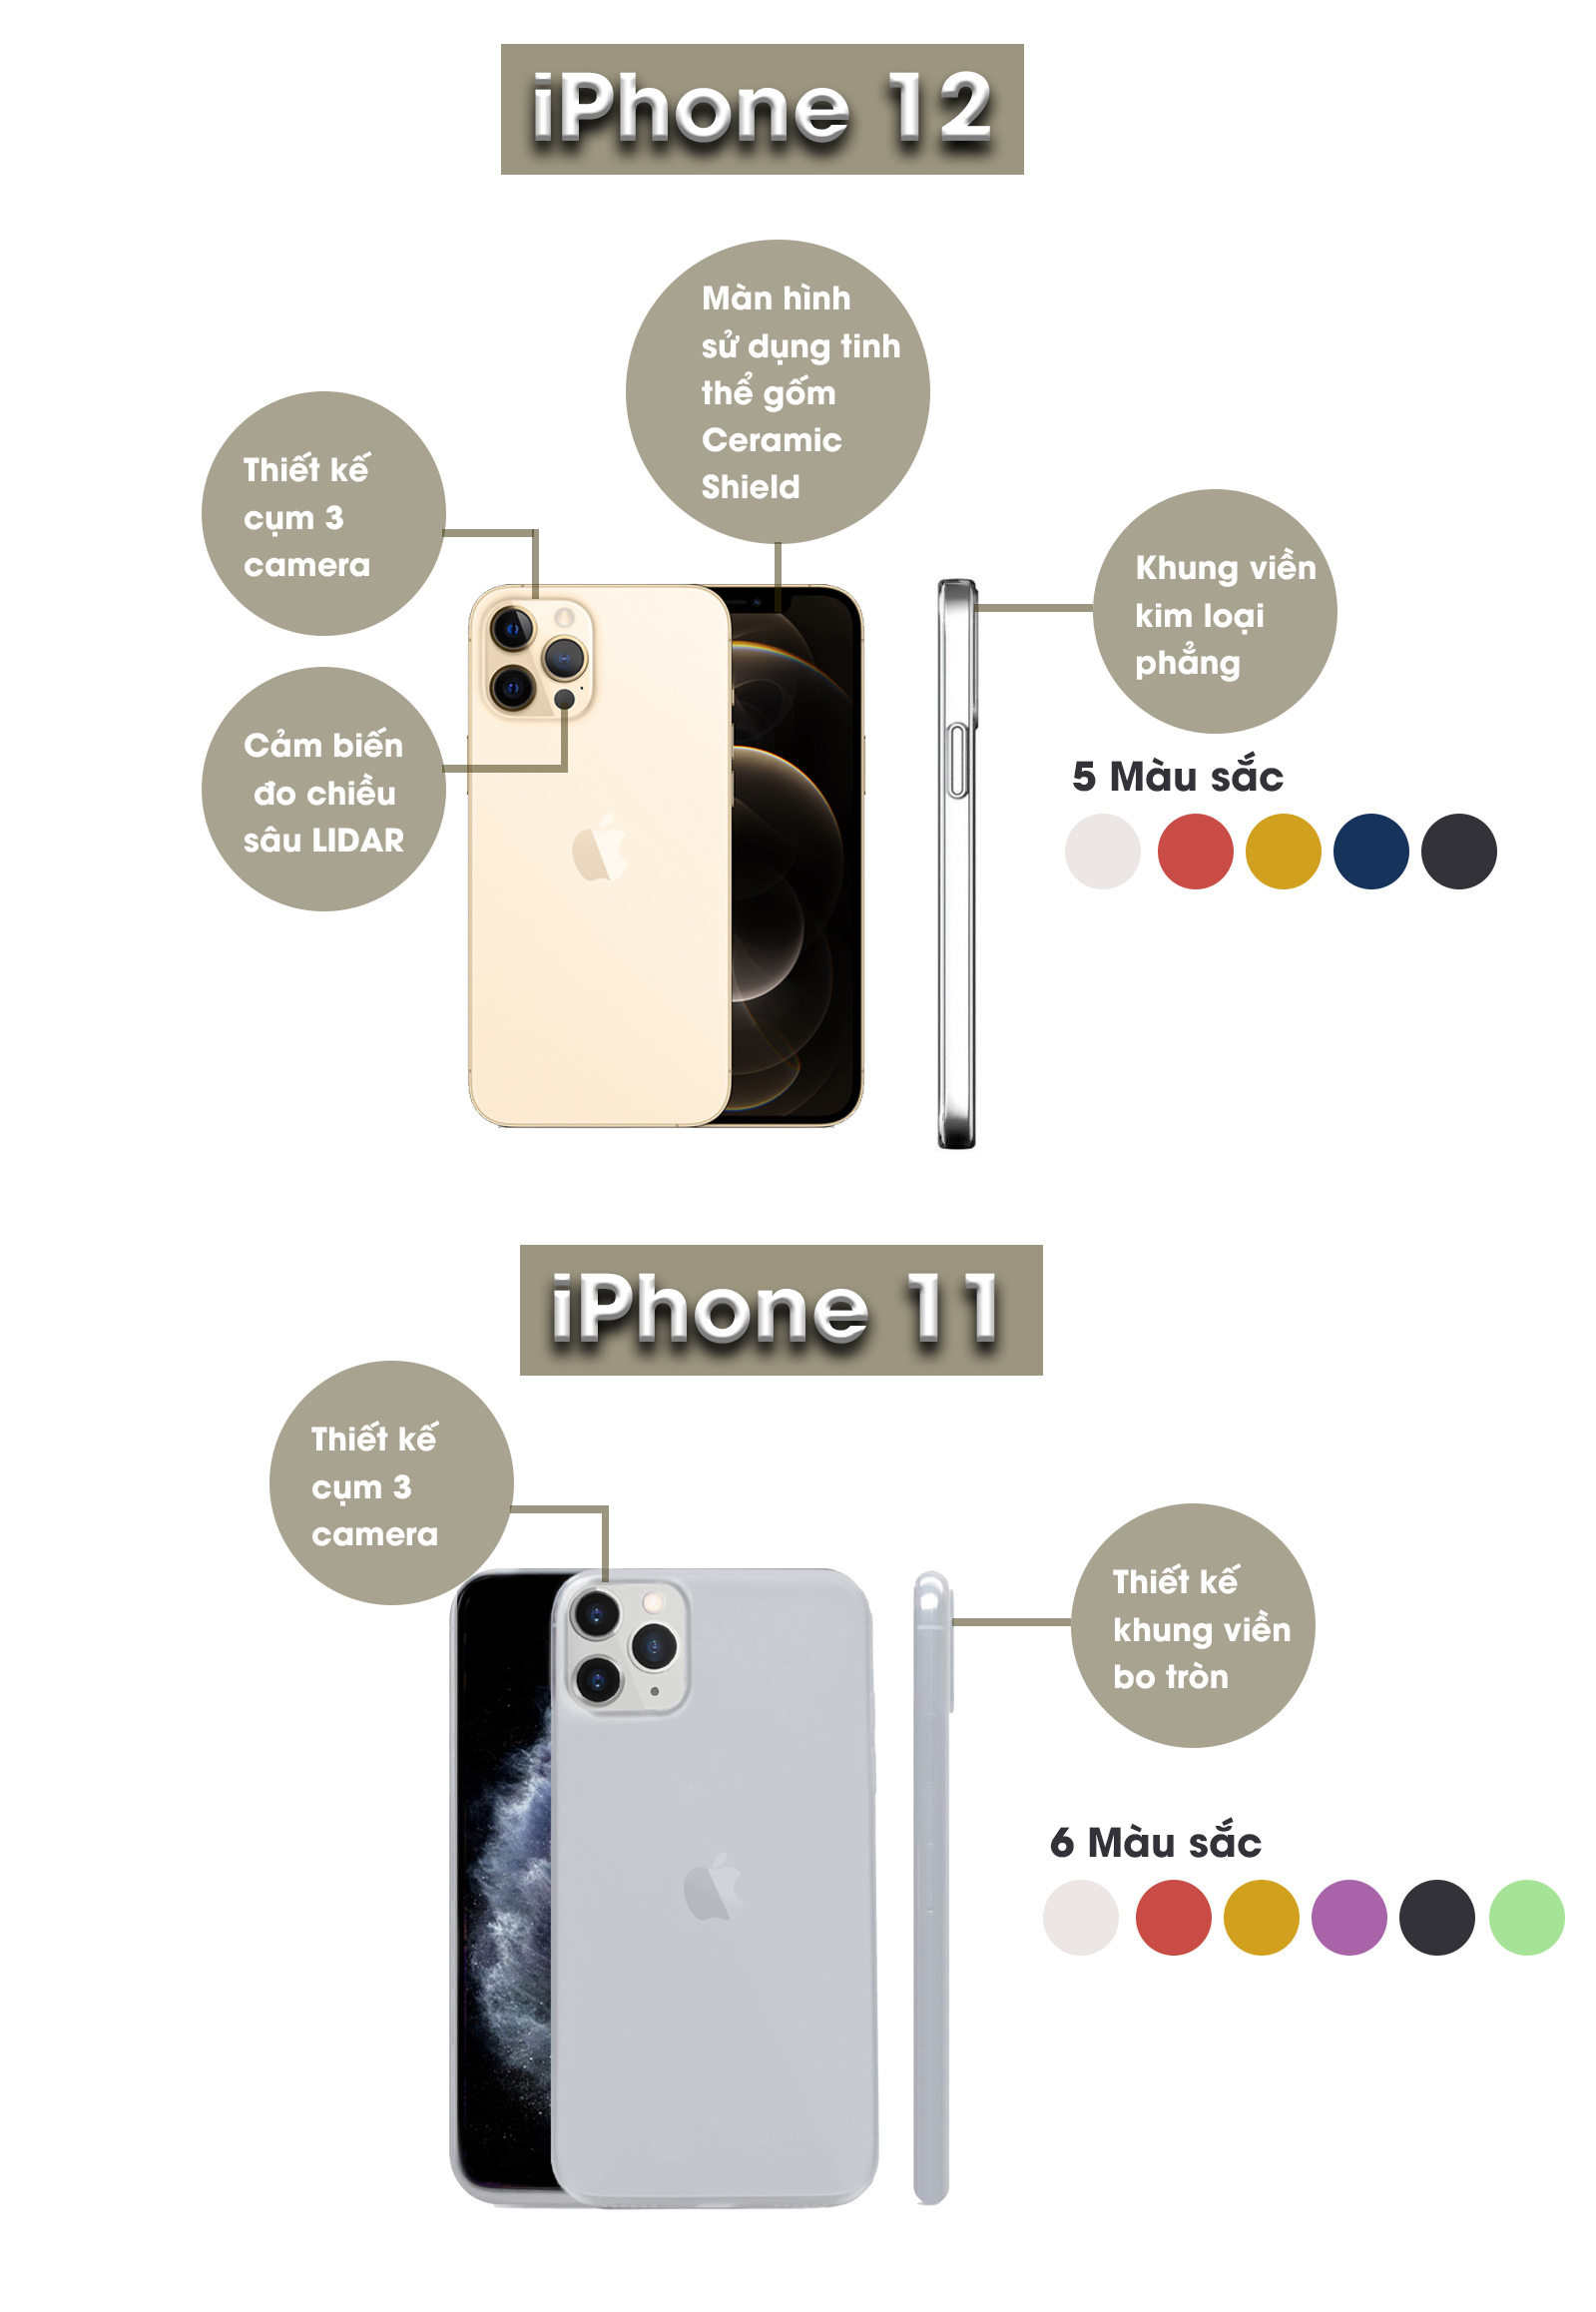 Đây là những điểm khác biệt giữa iPhone 12 và iPhone 11 - 3